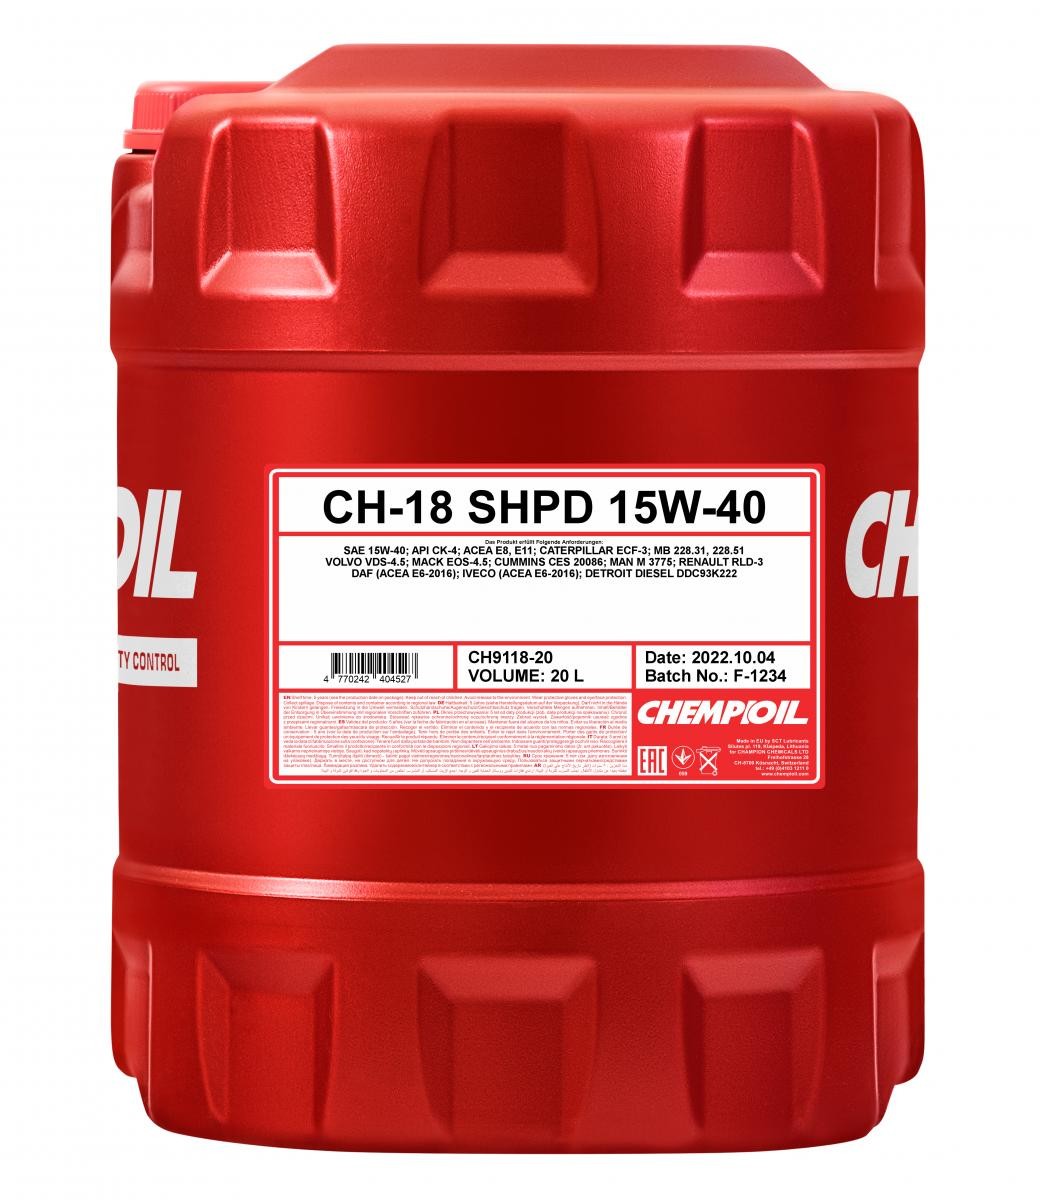 Car oil MAN M 3575 CHEMPIOIL - CH9118-20 TRUCK, CH-18 SHPD